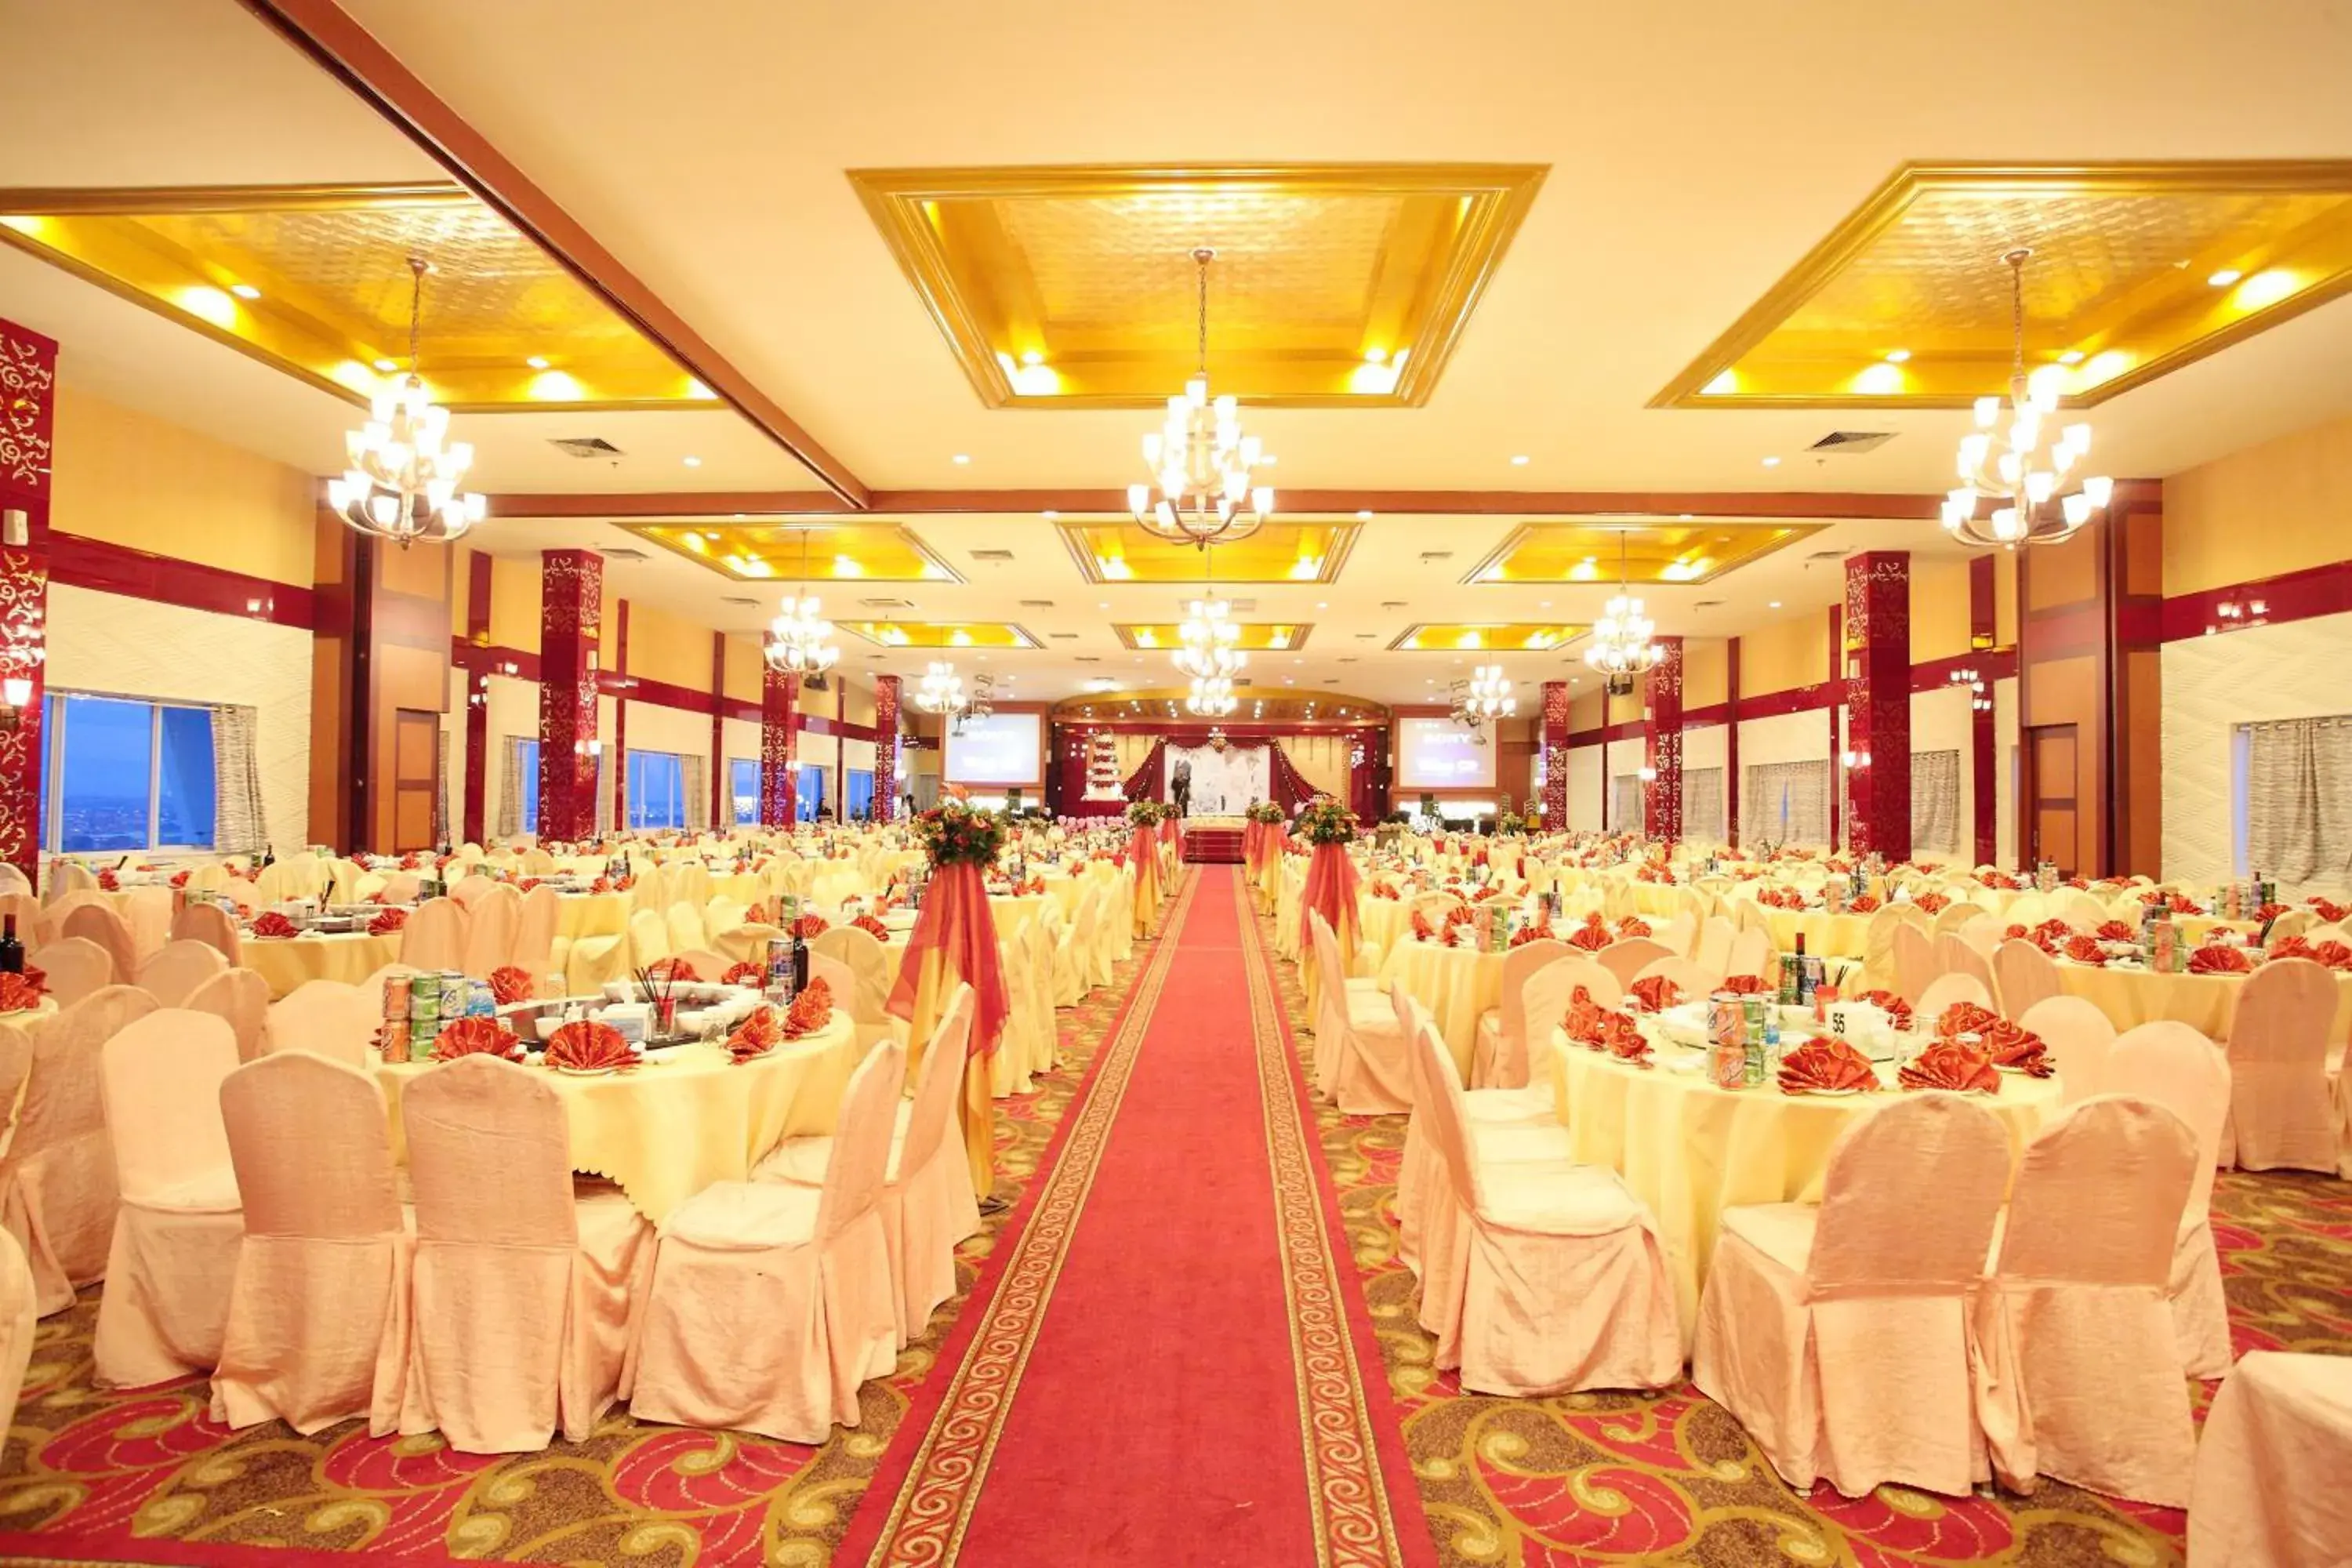 Banquet/Function facilities, Banquet Facilities in Crown Vista Hotel